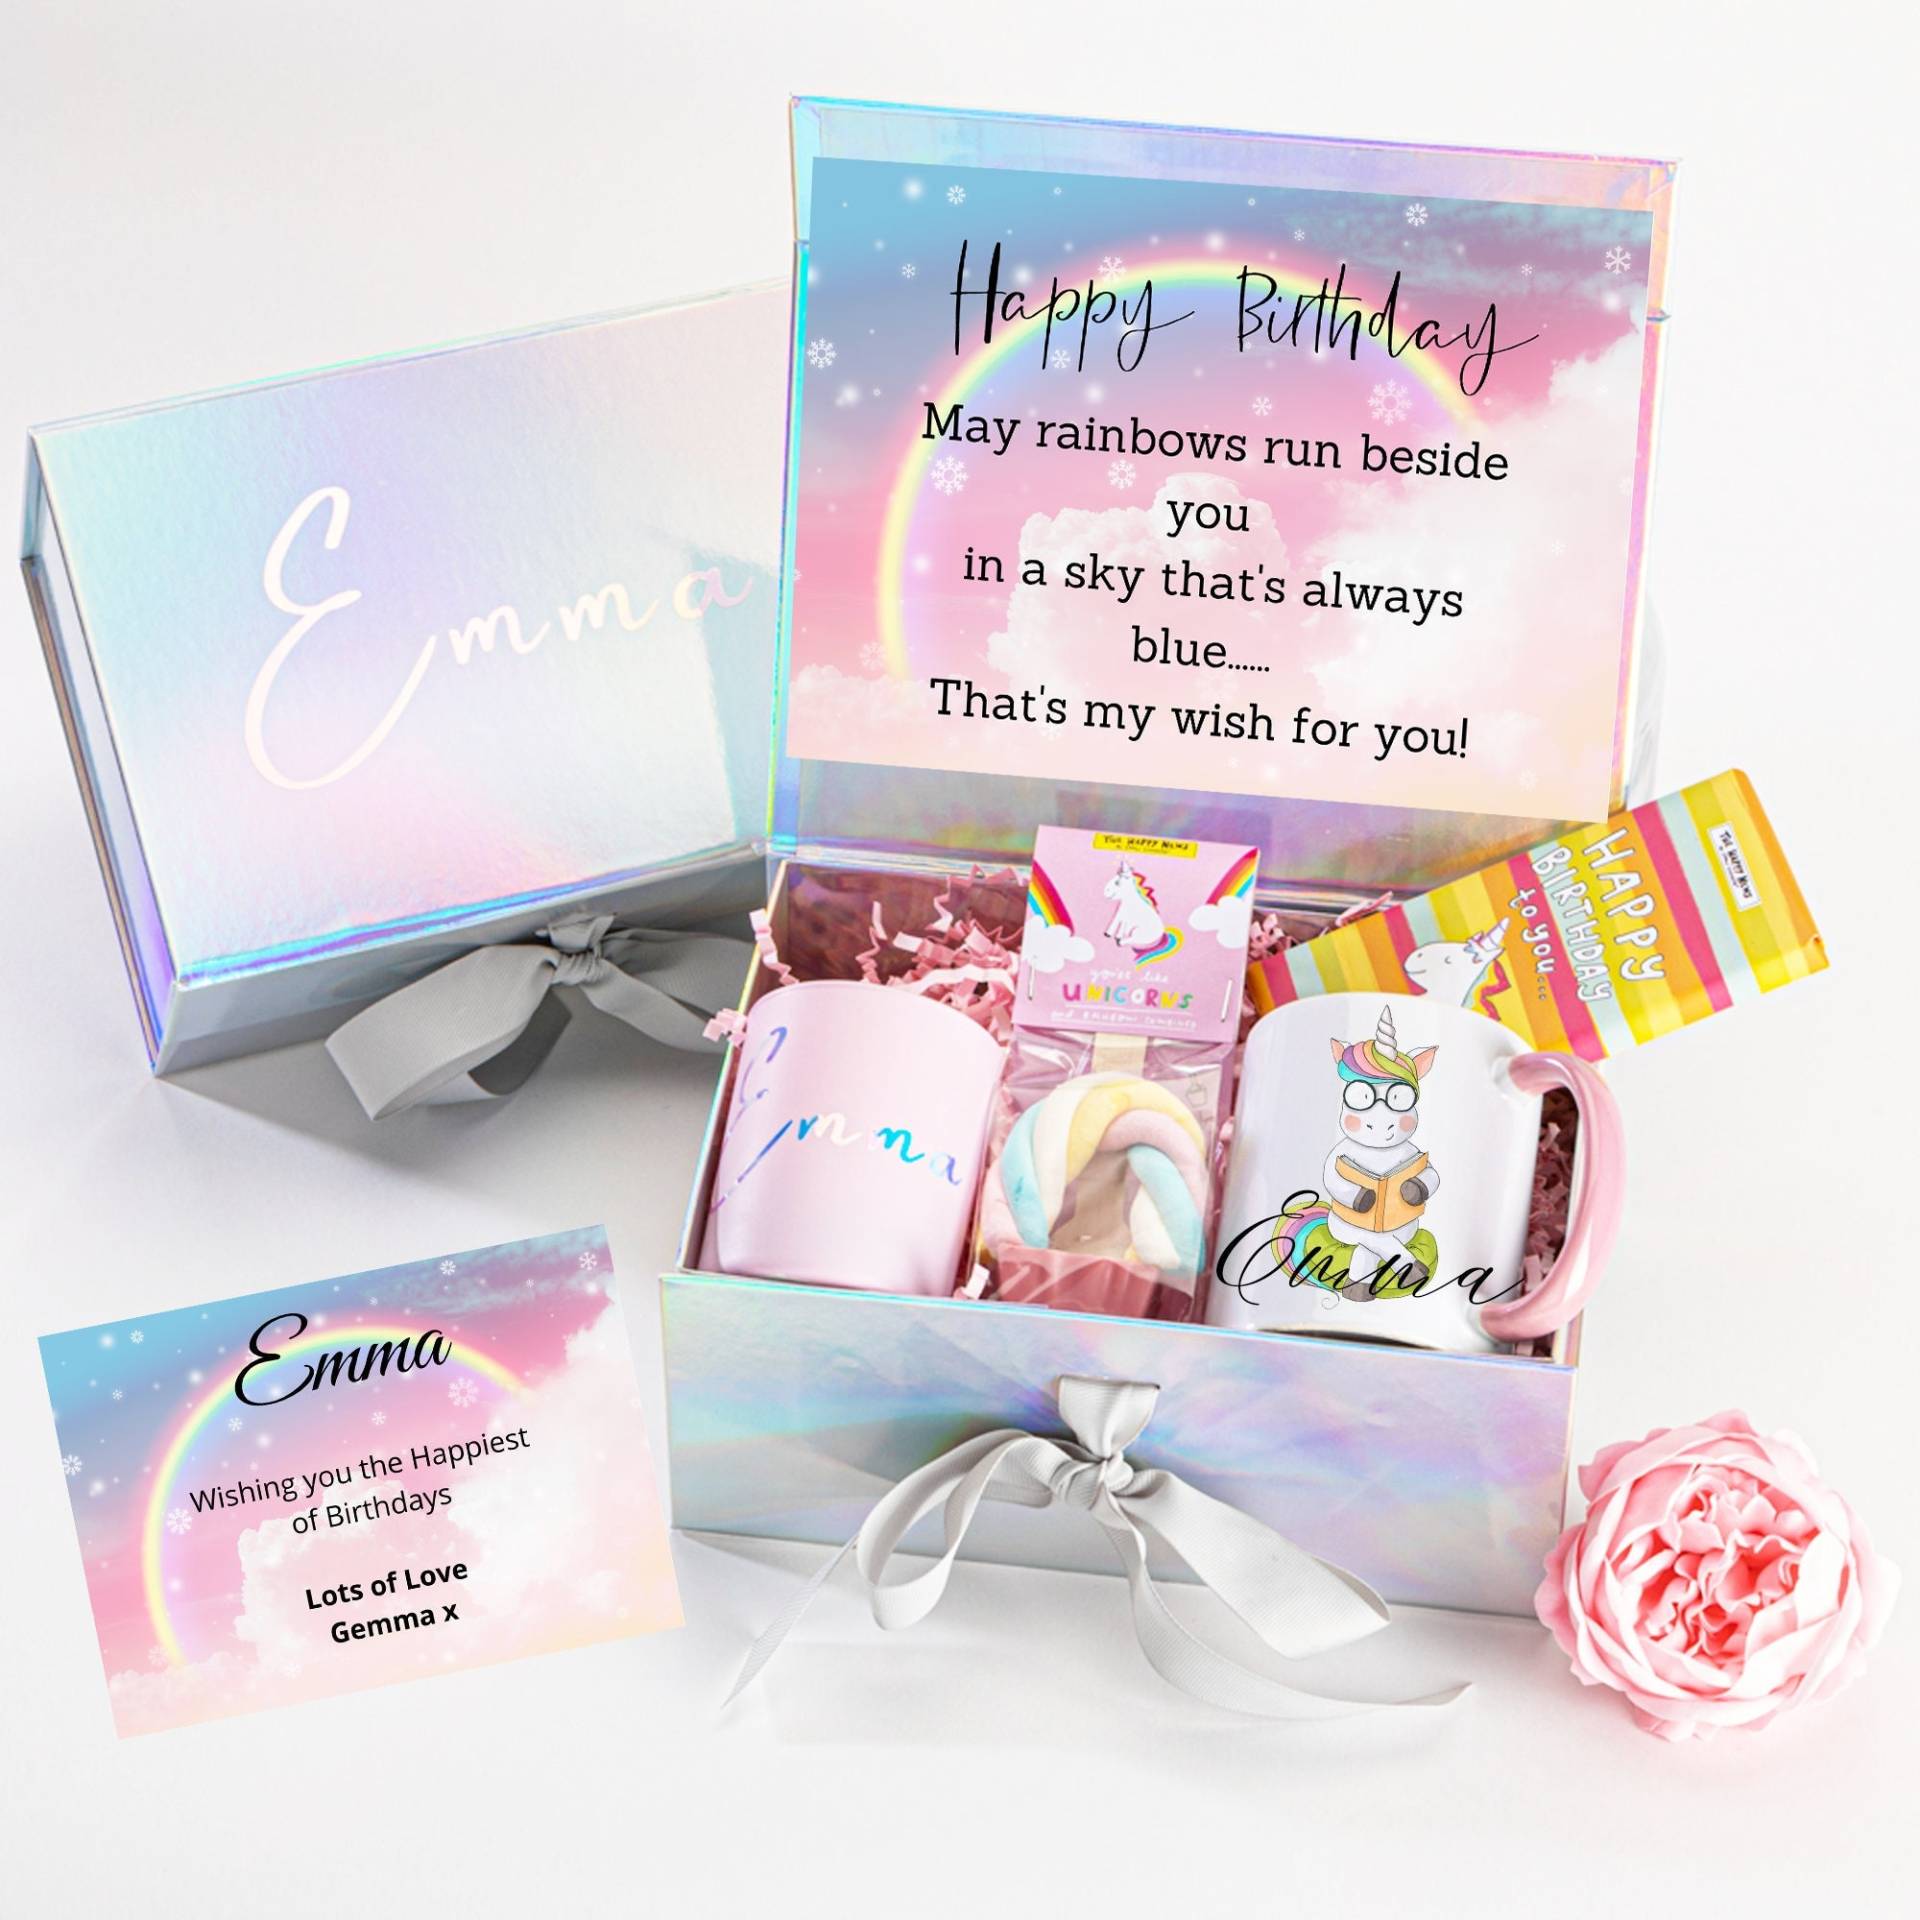 Personalisiertes Geburtstagsgeschenk, Personalisierte Geschenkbox, Happy Birthday Geschenk, Geburtstagsgeschenk Für Sie, Kerzen Geschenkset von BijouxLucy